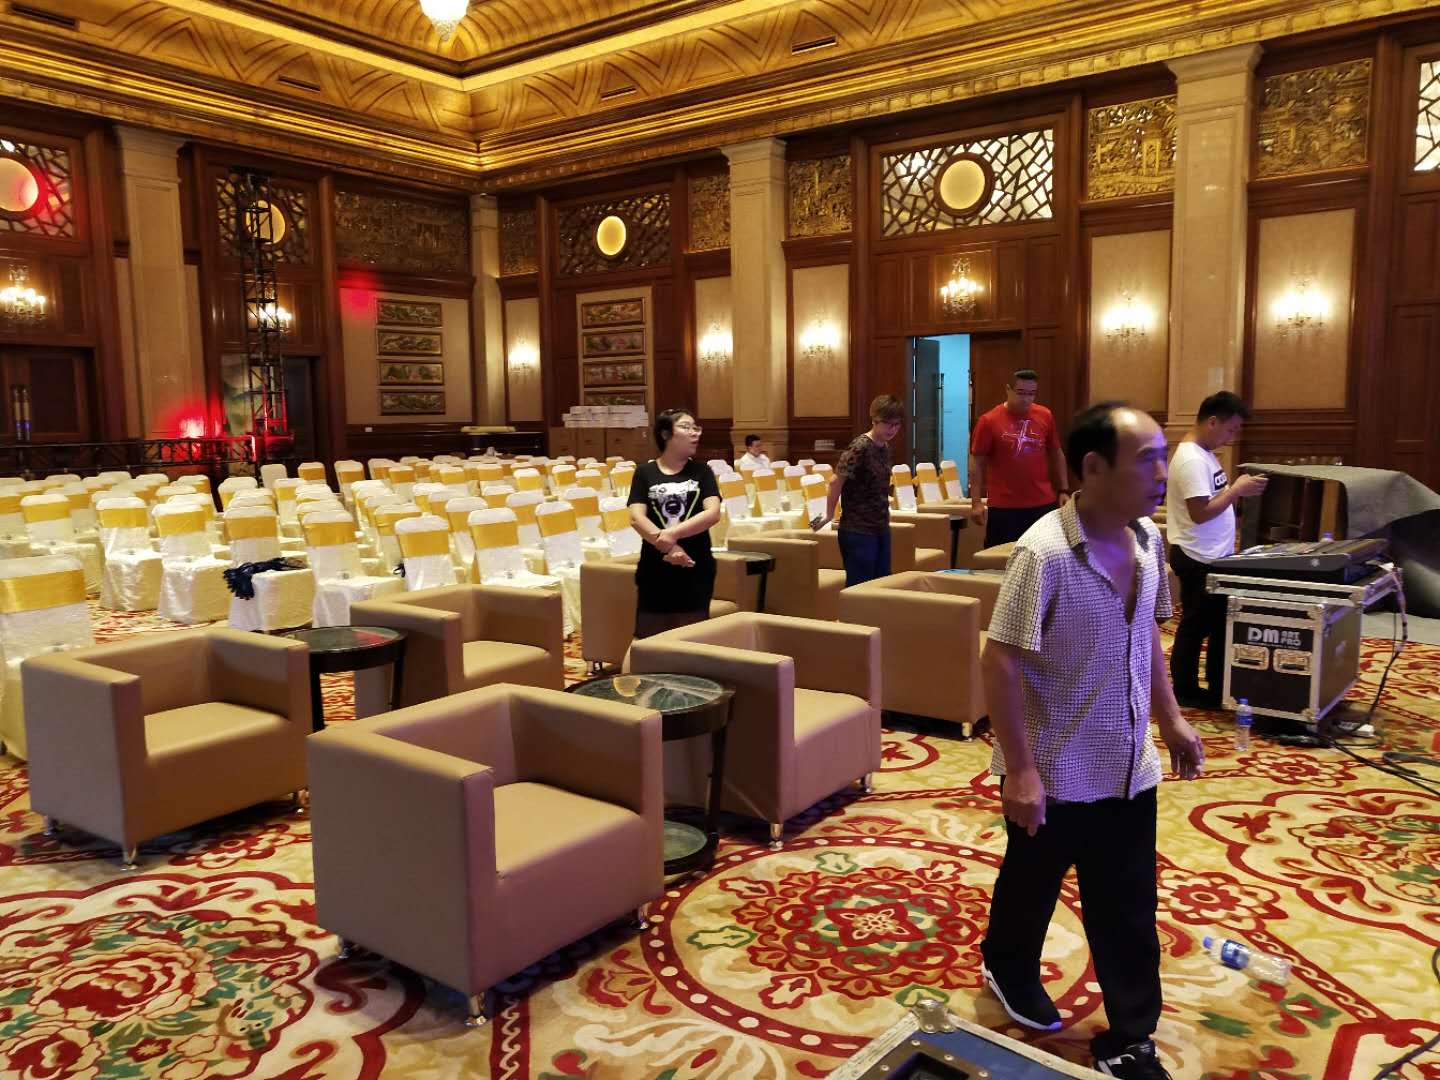 上海沙发租赁 专业桌椅租赁公司 沙发大量低价出租